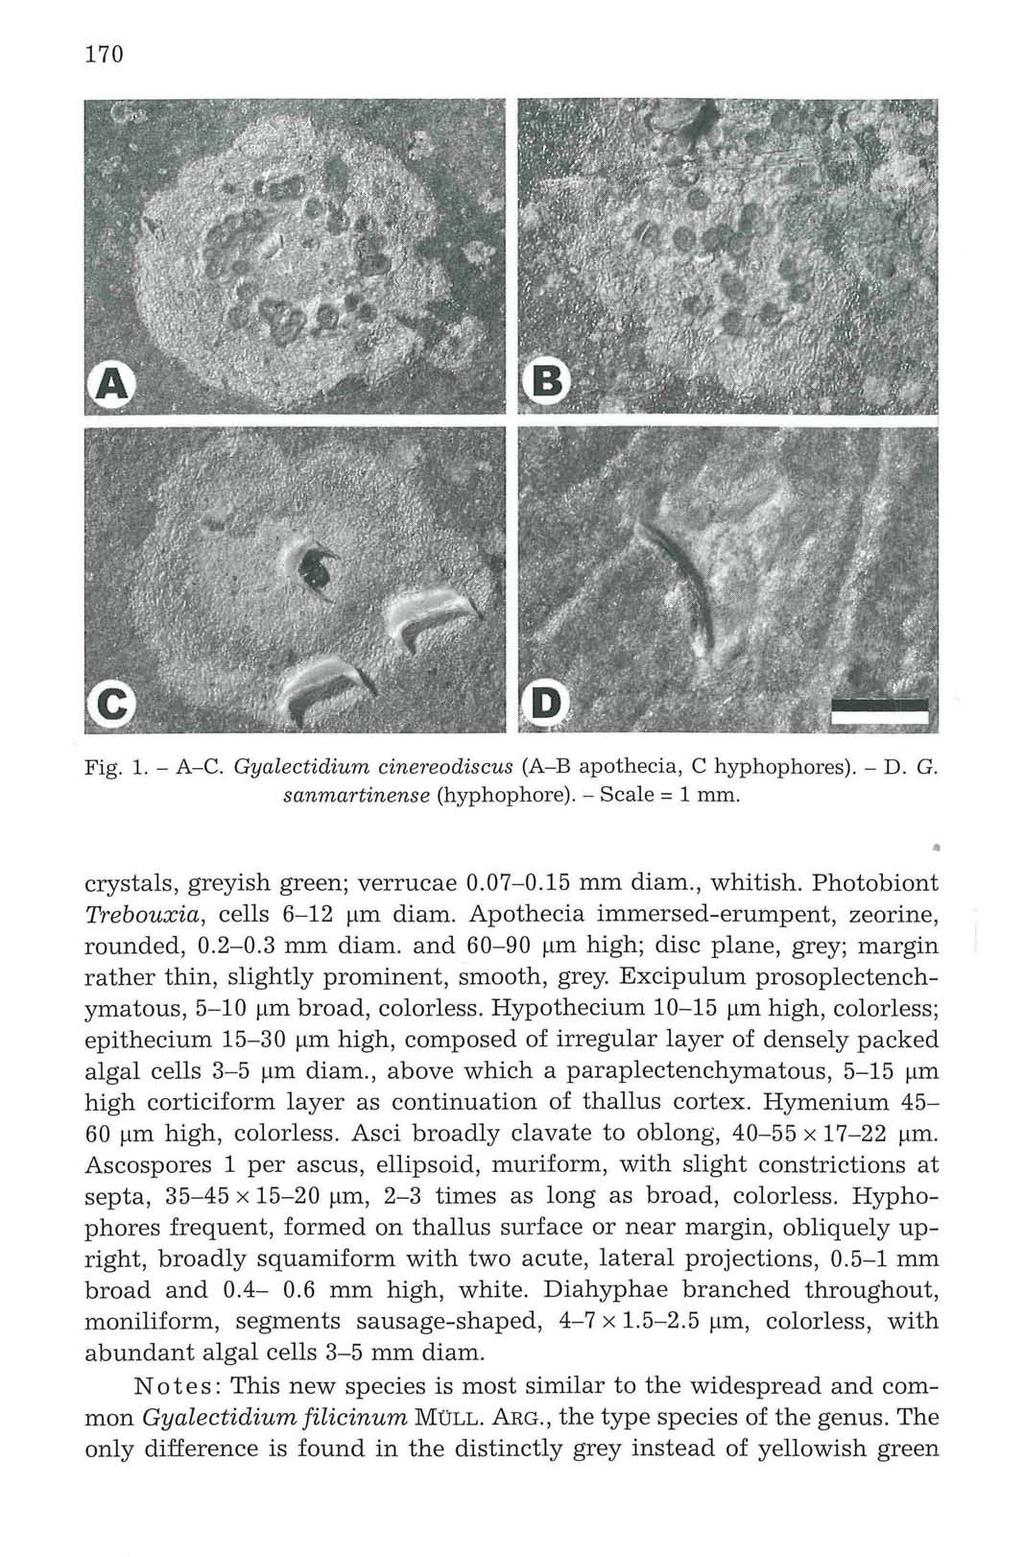 Verlag 170 Ferdinand Berger & Söhne Ges.m.b.H., Horn, Austria, download unter www.biologiezentrum.at Fig. 1. - A-C. Gyalectidium cinereodiscus (A-B apothecia, C hyphophores). - D. G. sanmartinense (hyphophore).